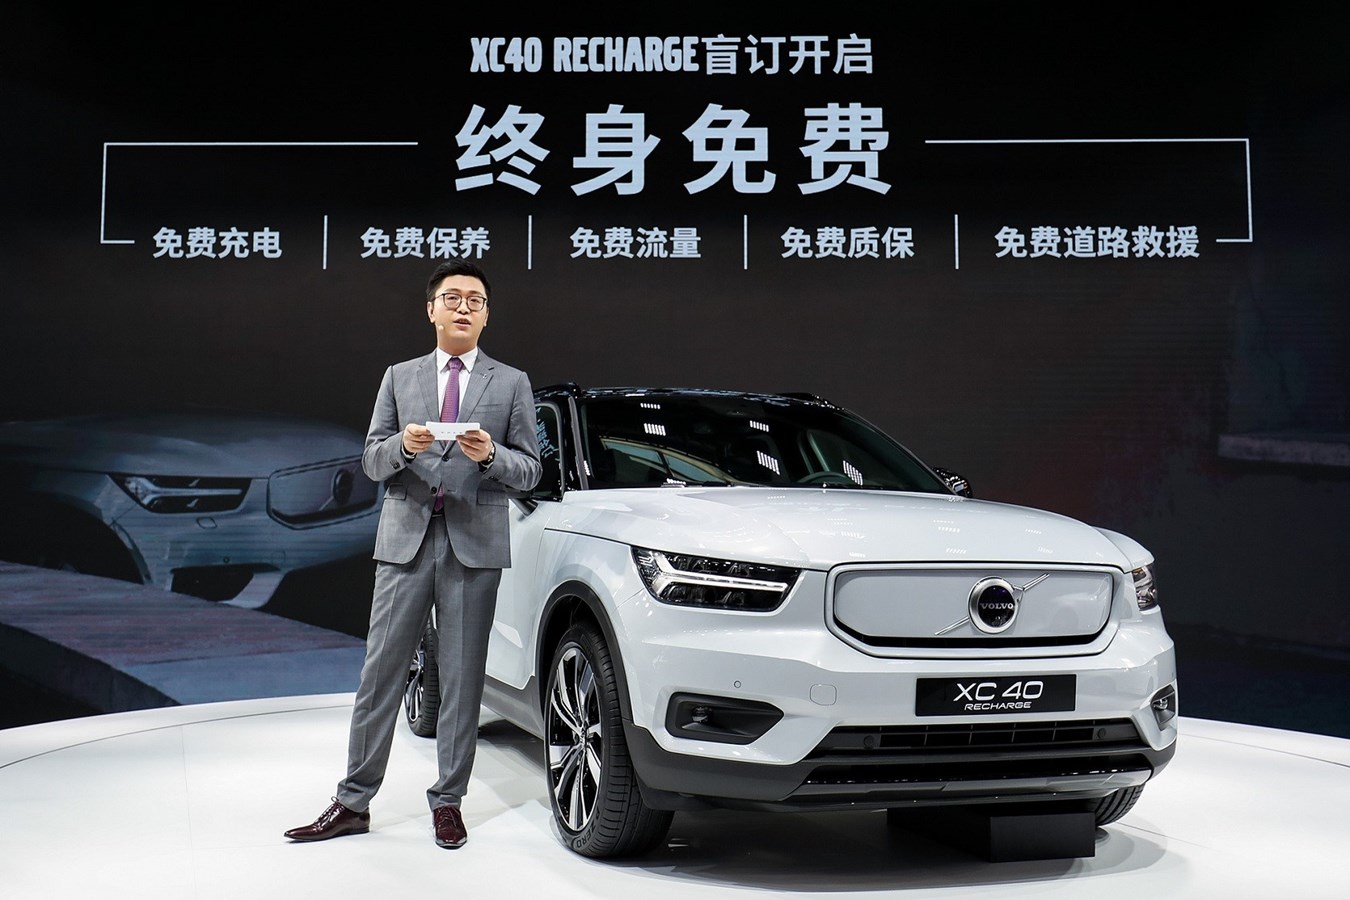 沃尔沃汽车大中华区销售公司总裁钦培吉宣布XC40 RECHARGE官方直售并开启盲订